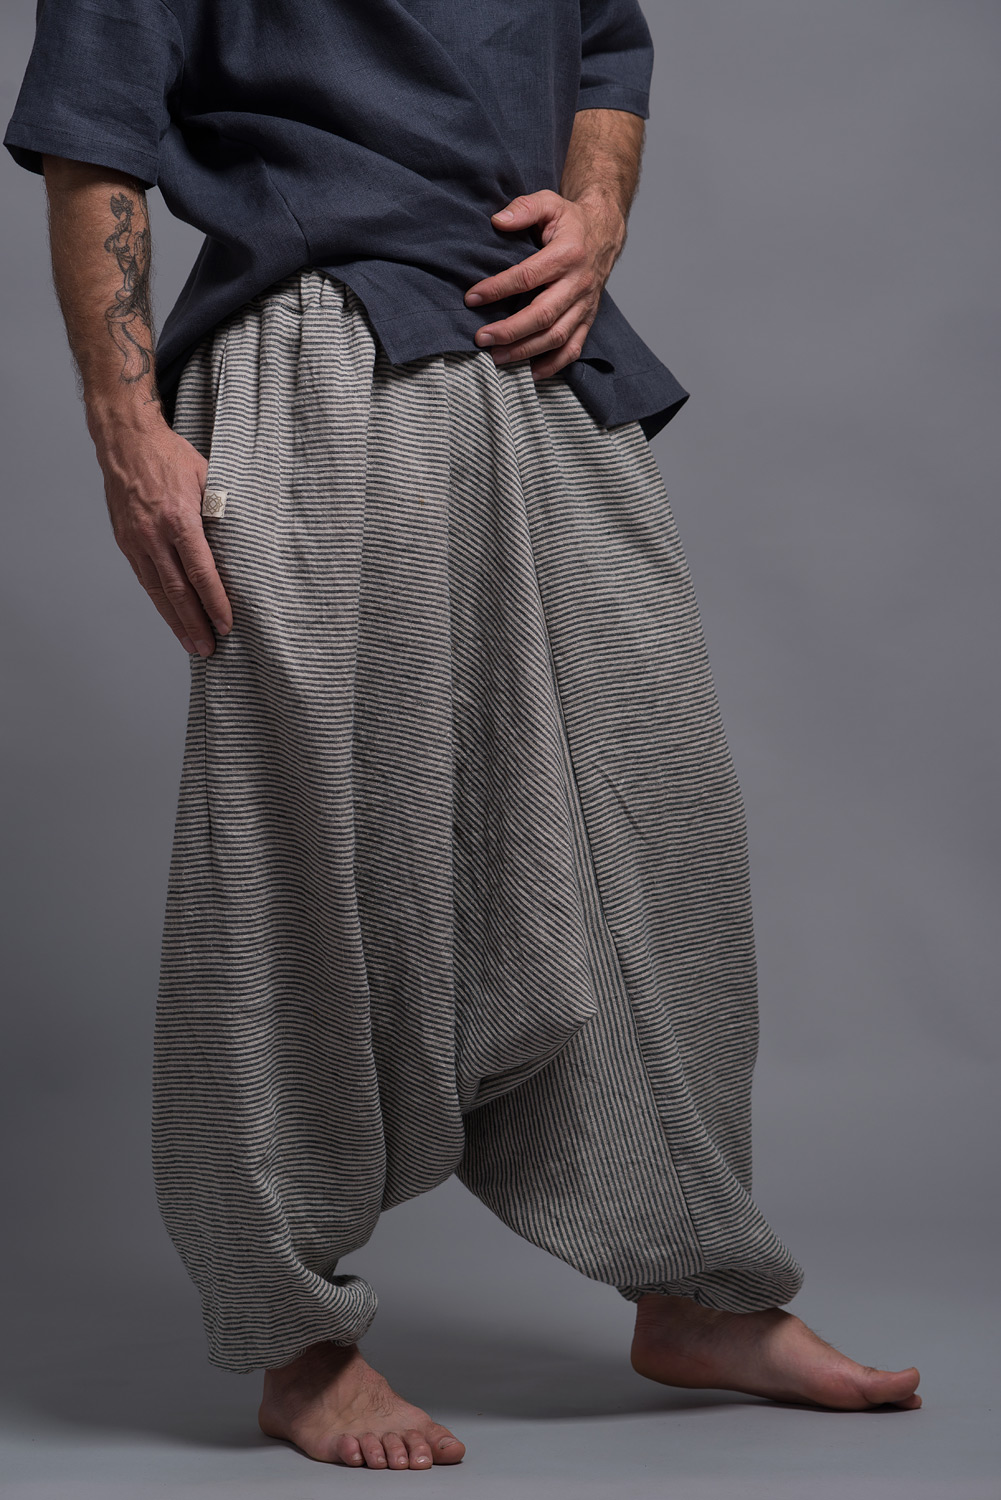 Harem Pants Men's Harem Pants Cotton Linen Festival Baggy Solid Trousers  Retro Gypsy Pants 